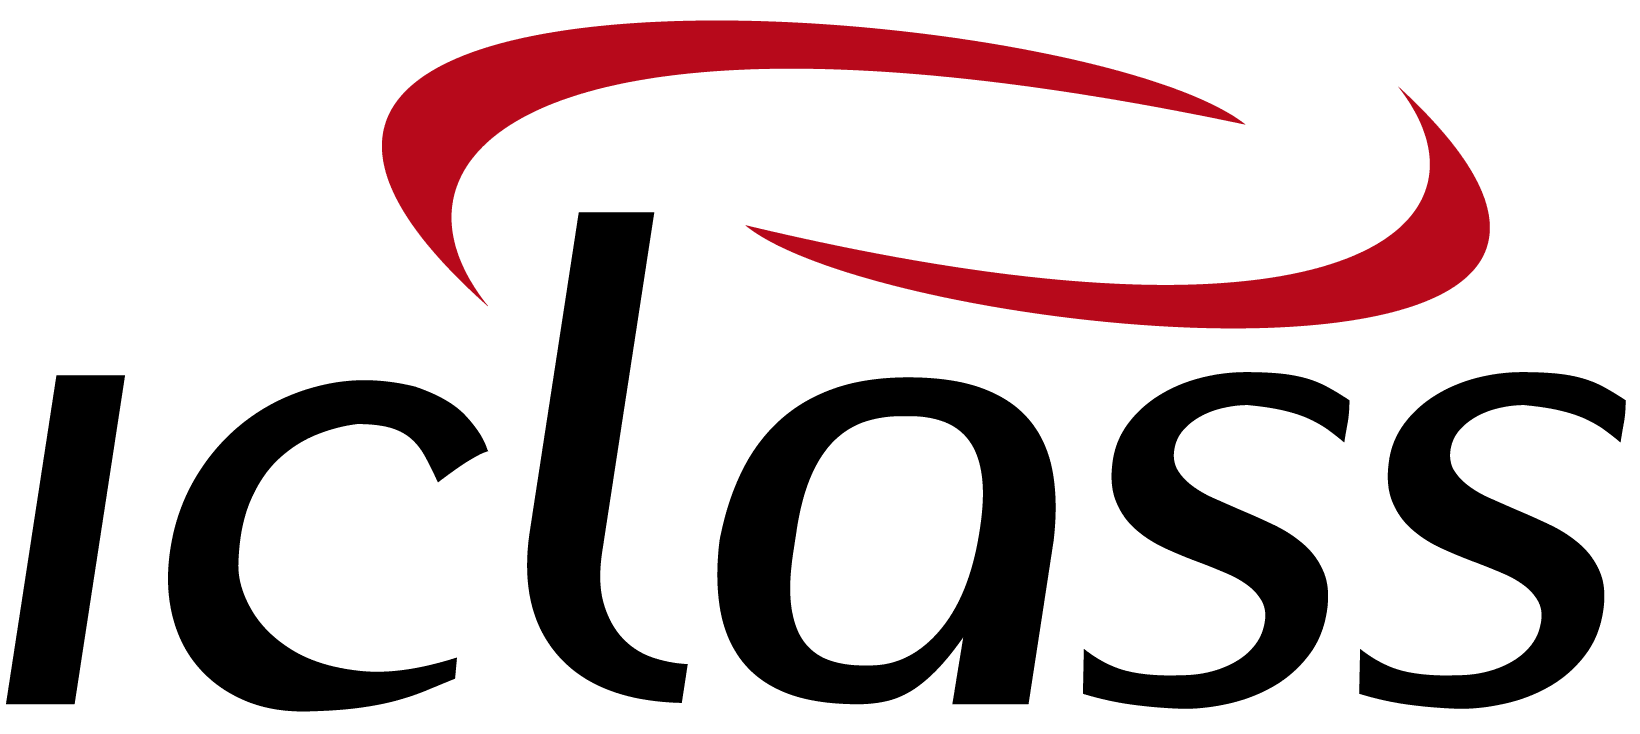 logo IClass Software de Ordem de Serviço Online Software for Machine Manufacturers | IClass